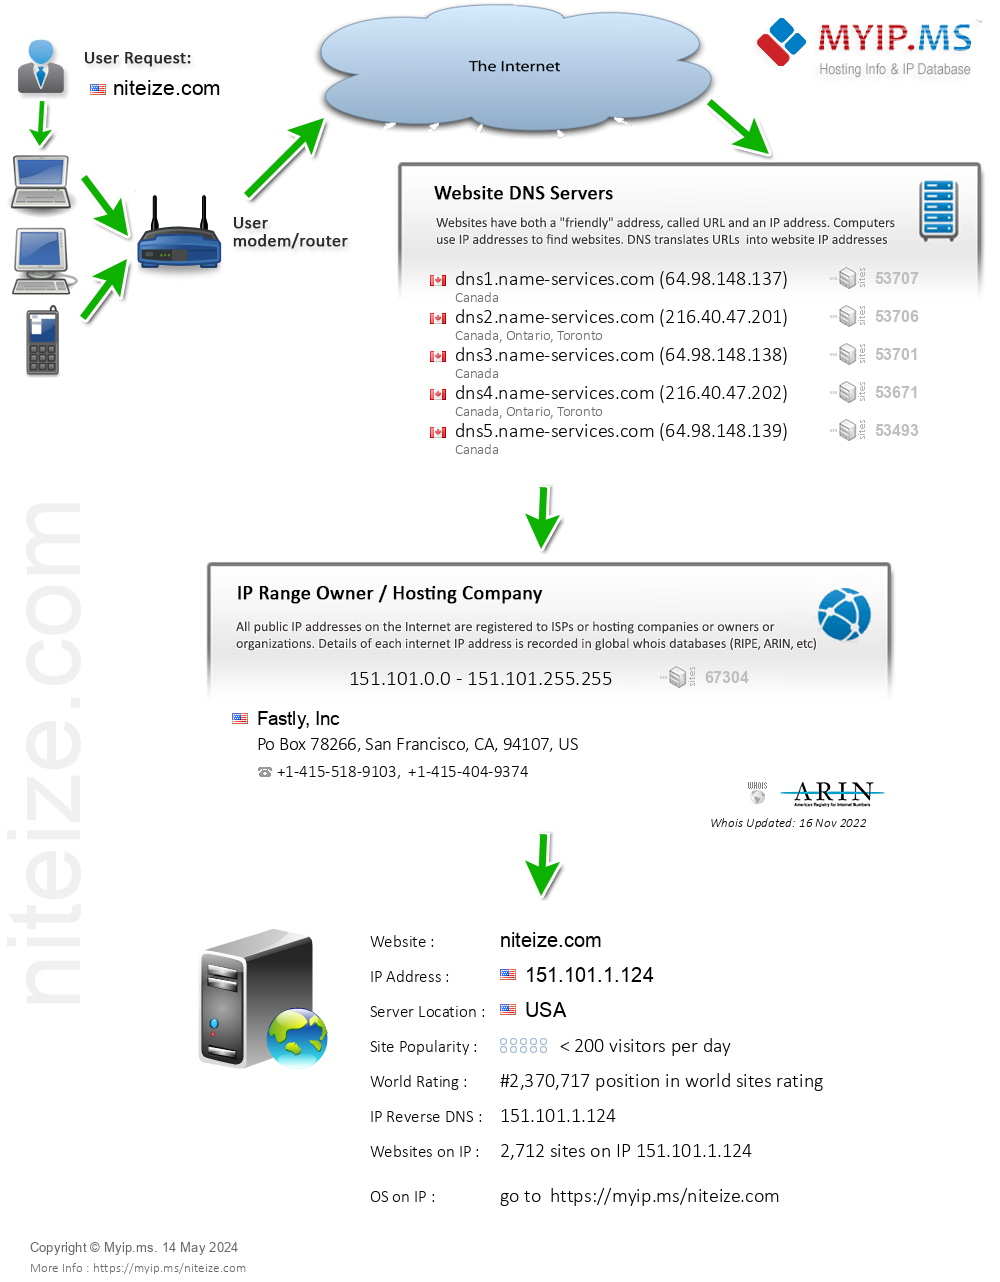 Niteize.com - Website Hosting Visual IP Diagram